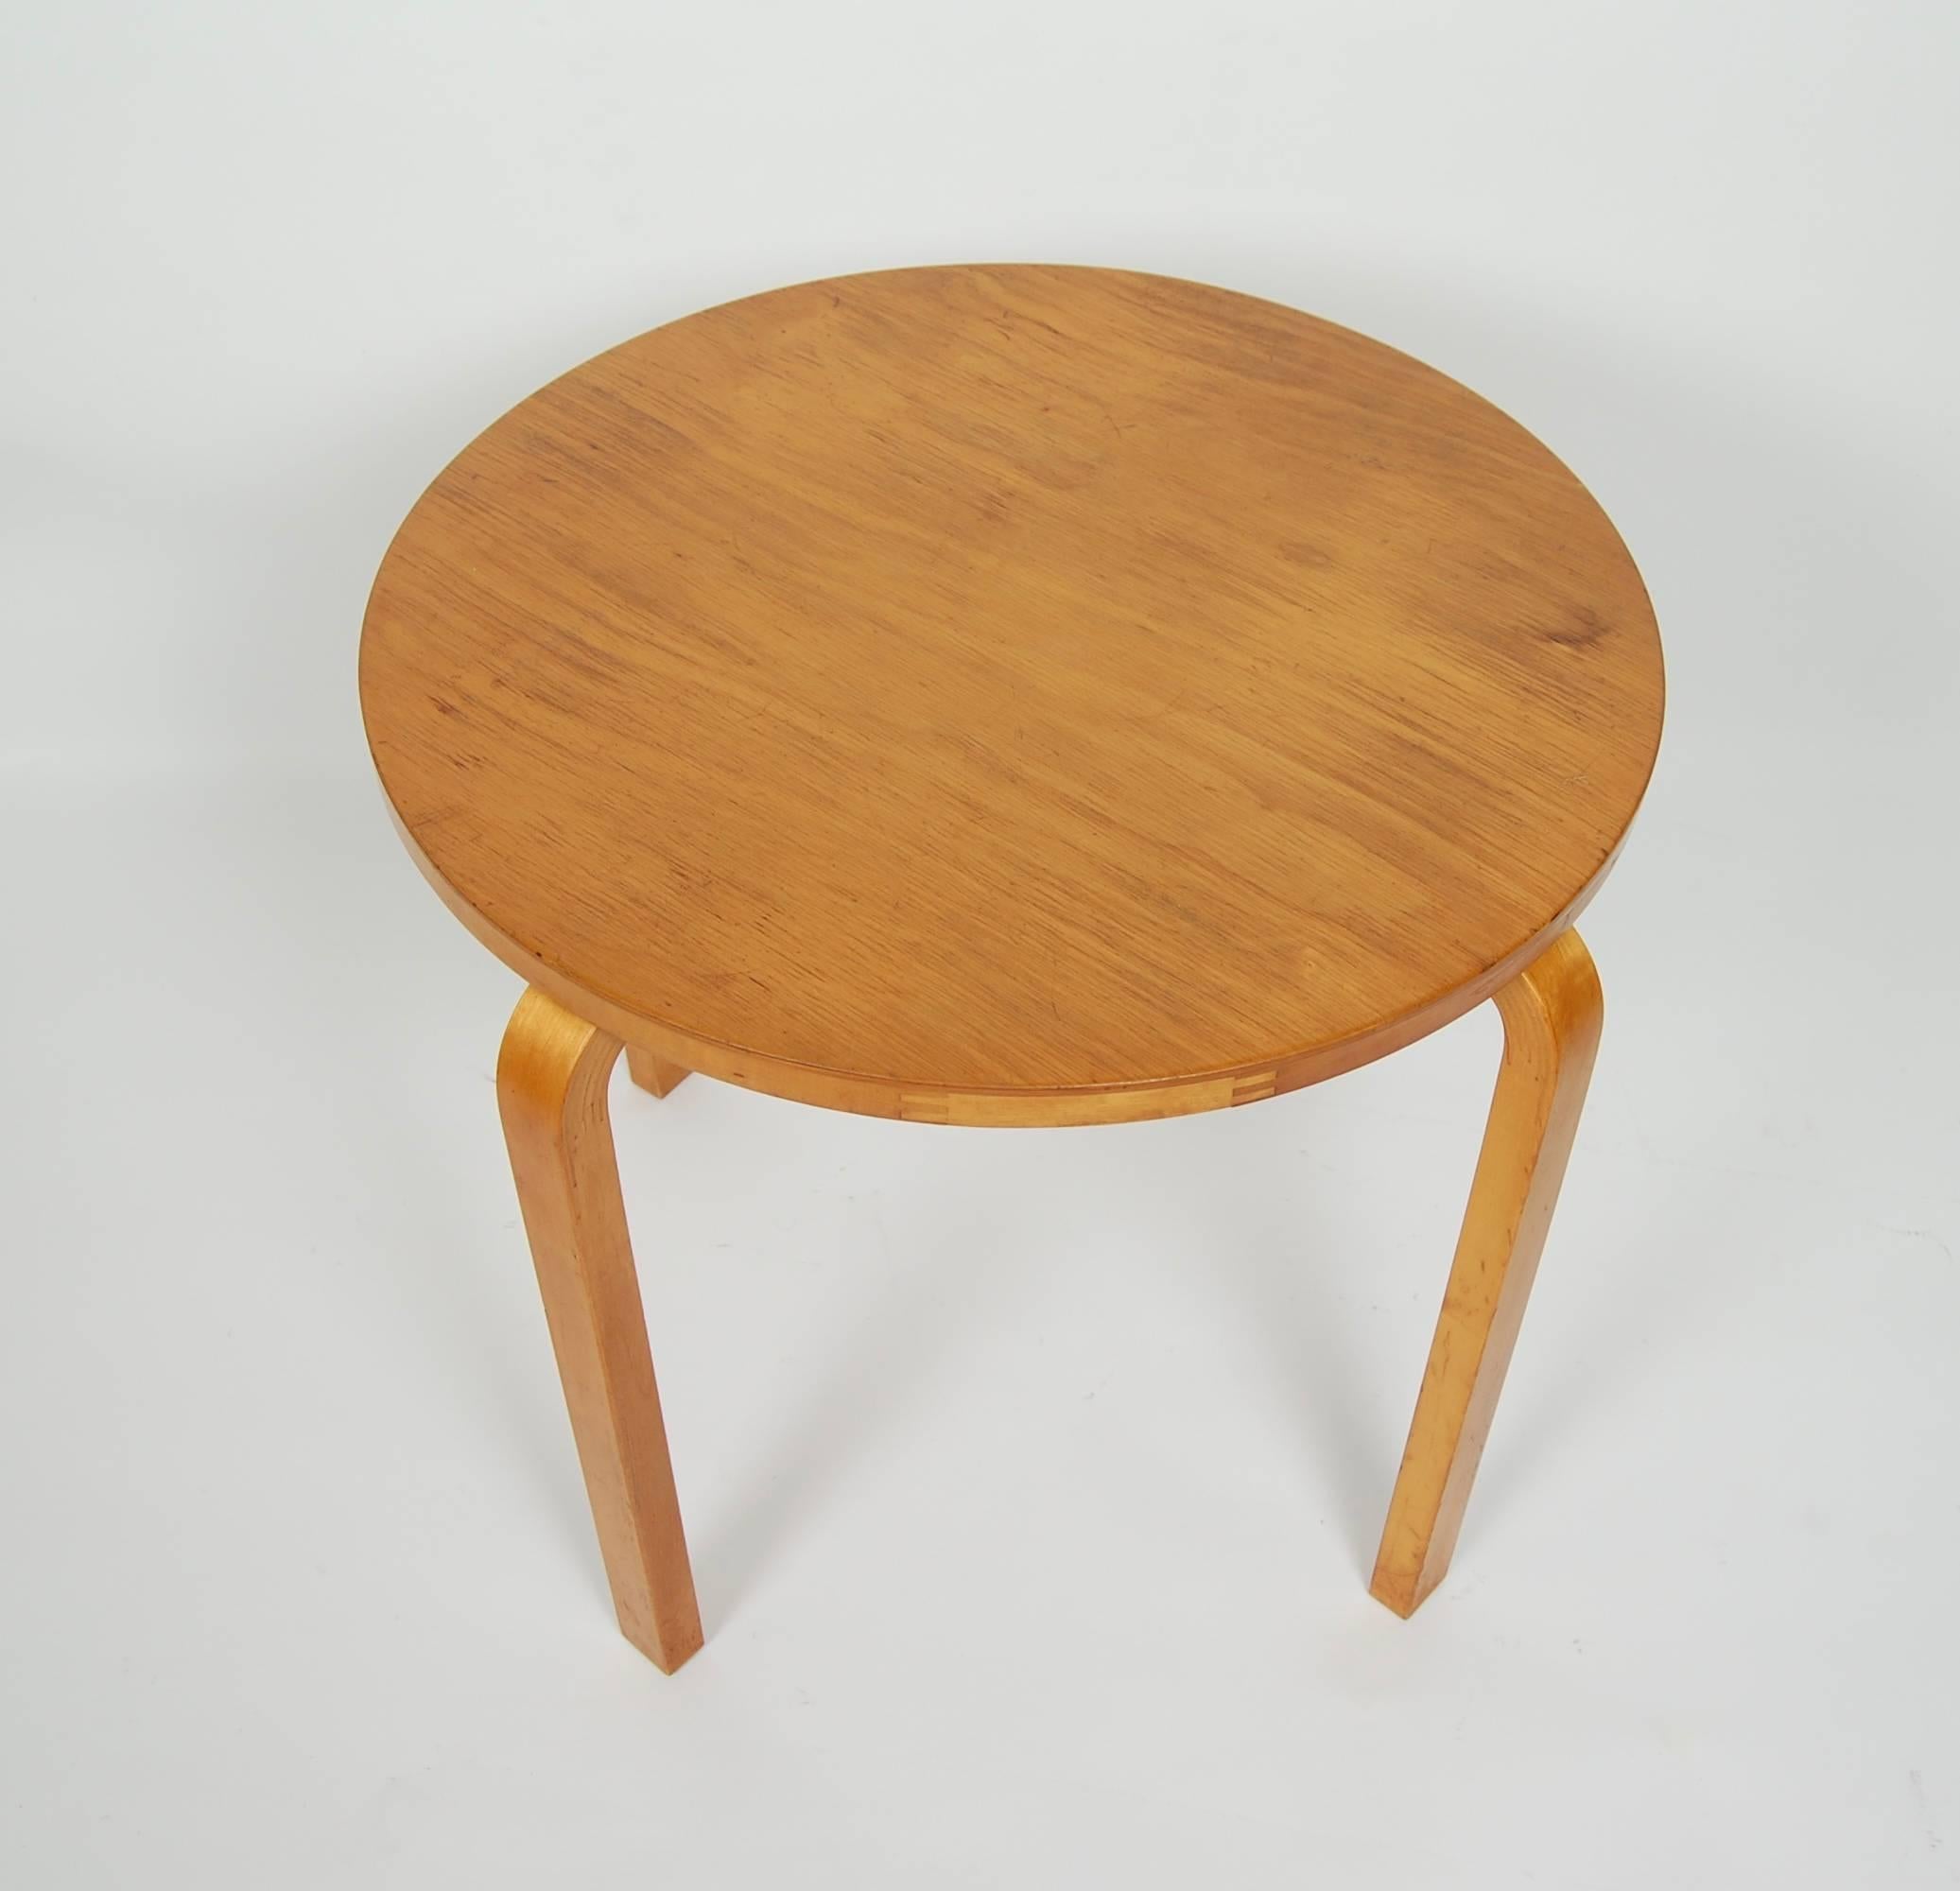 Early Production Alvar Aalto Side Table by Finmar Scandinavian Modern 1